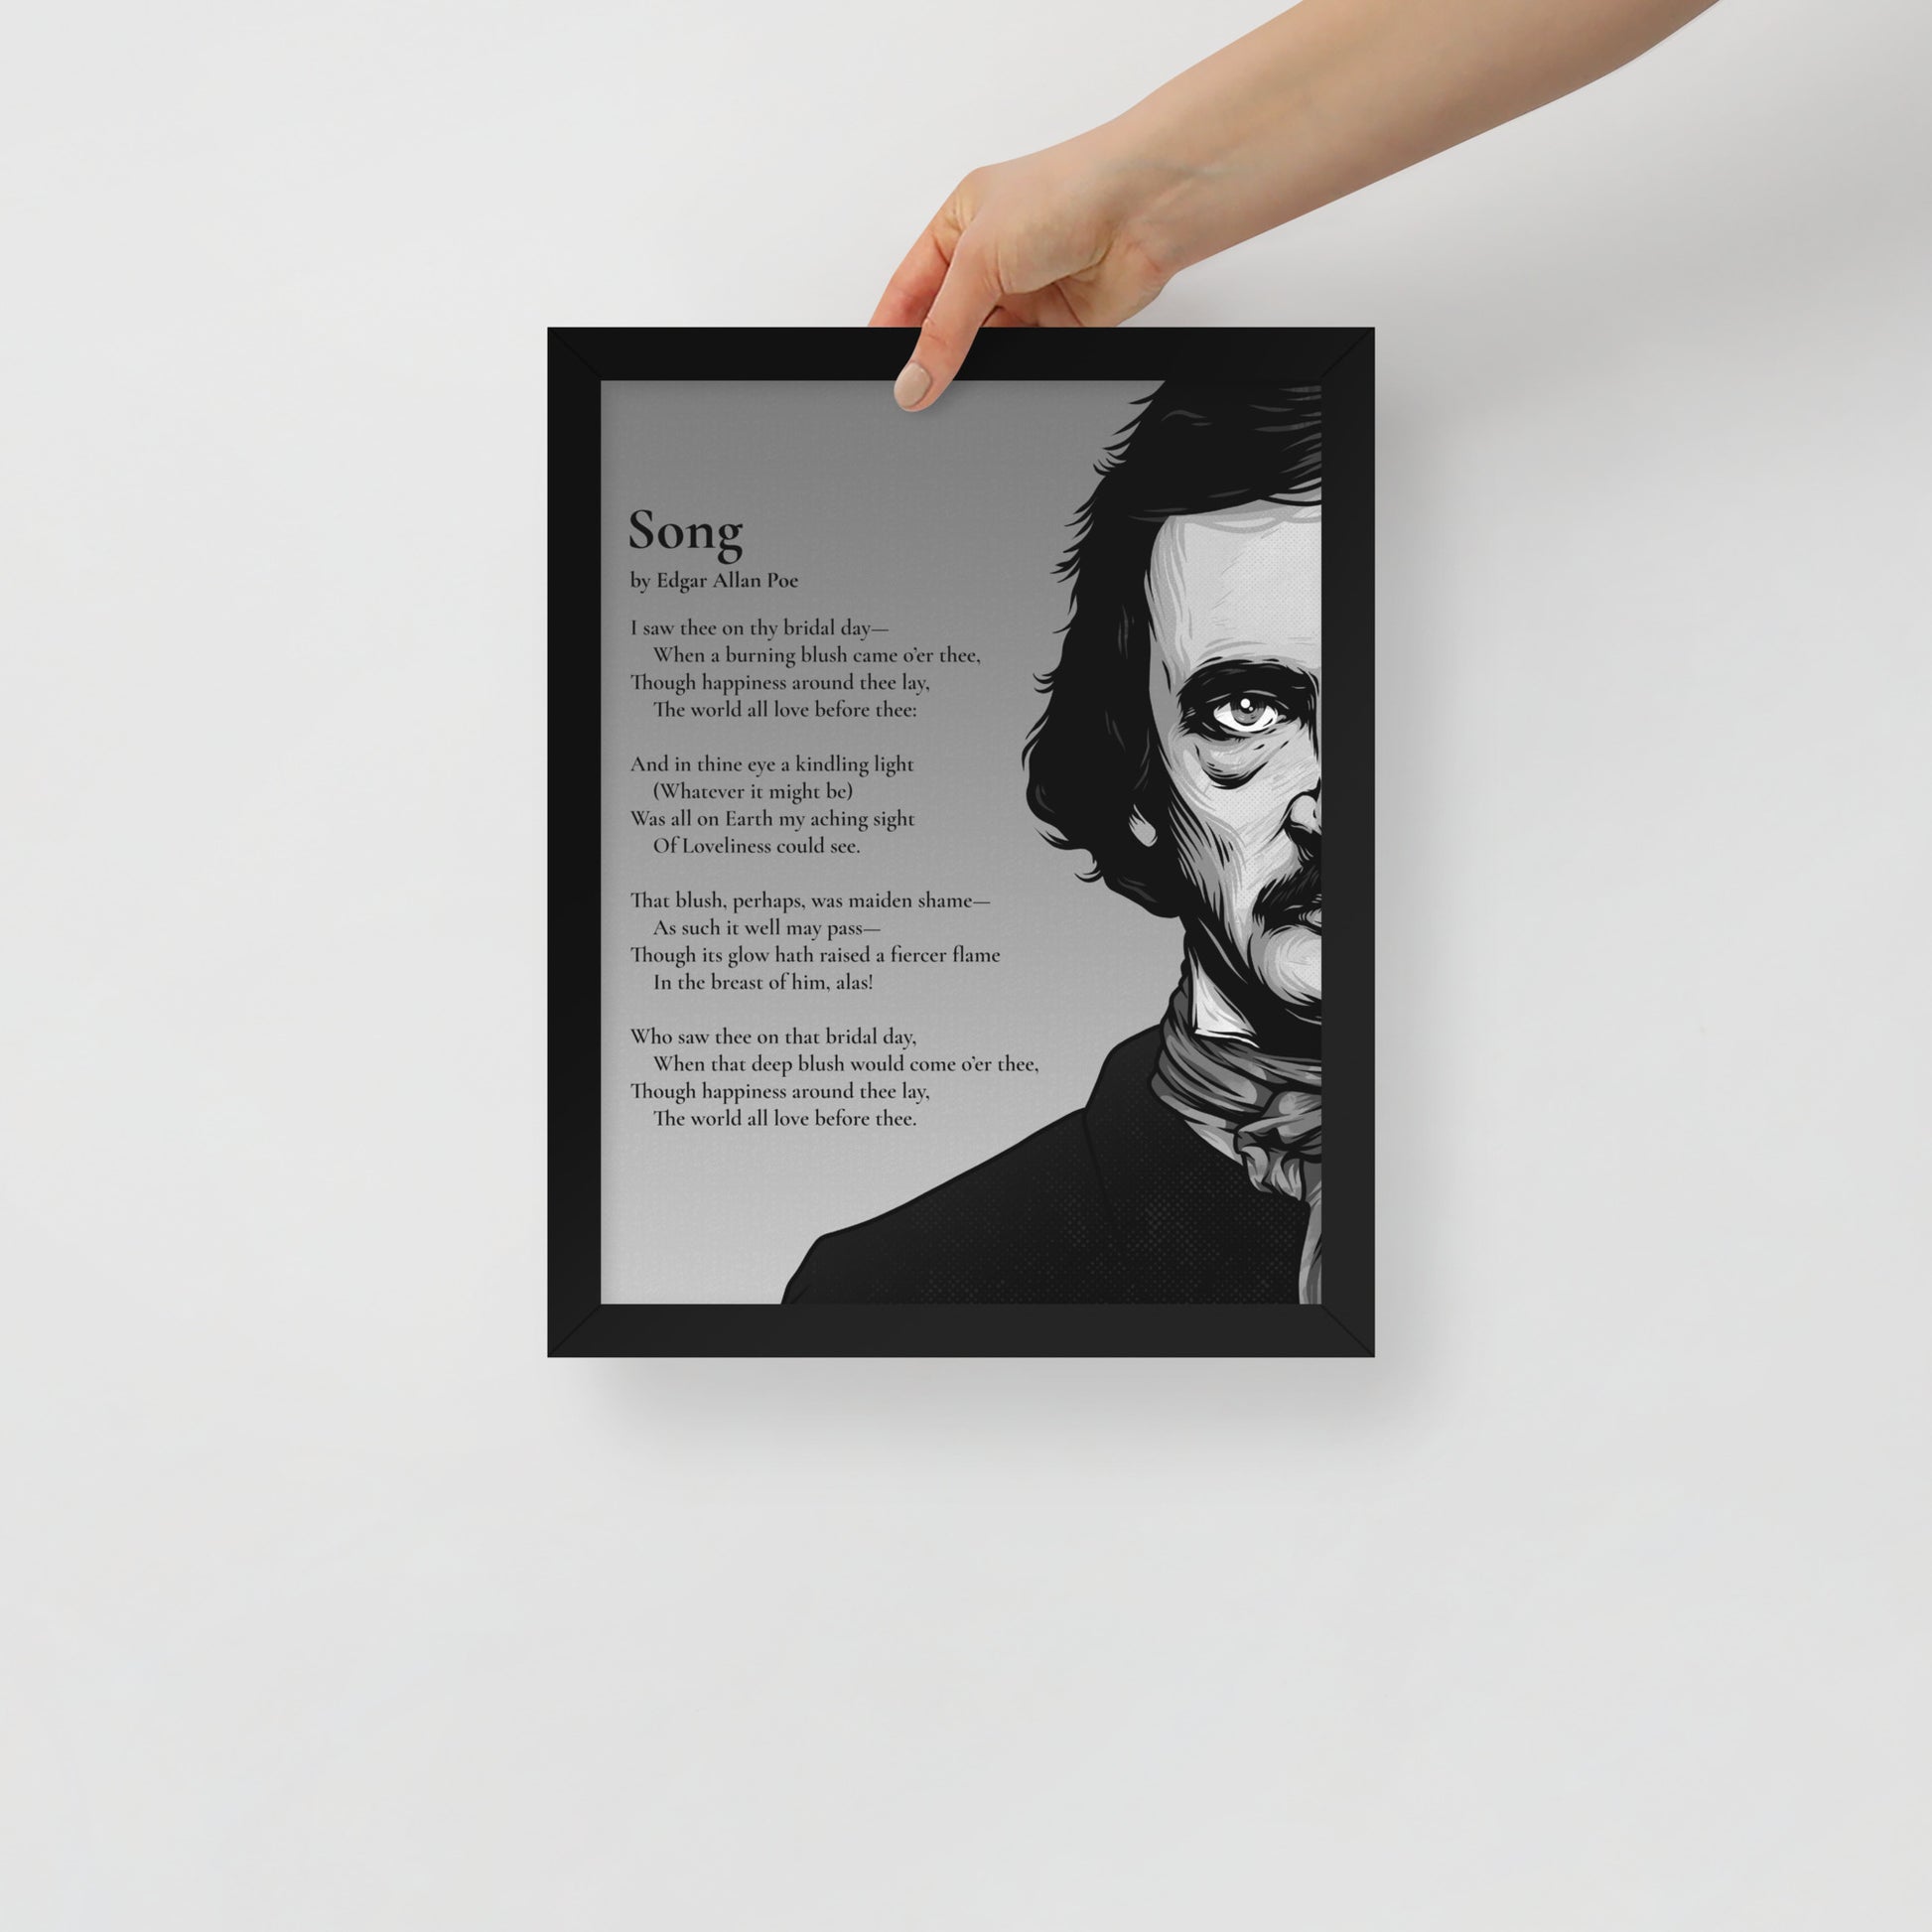 Edgar Allan Poe's 'Song' Framed Matted Poster - 11 x 14 Black Frame